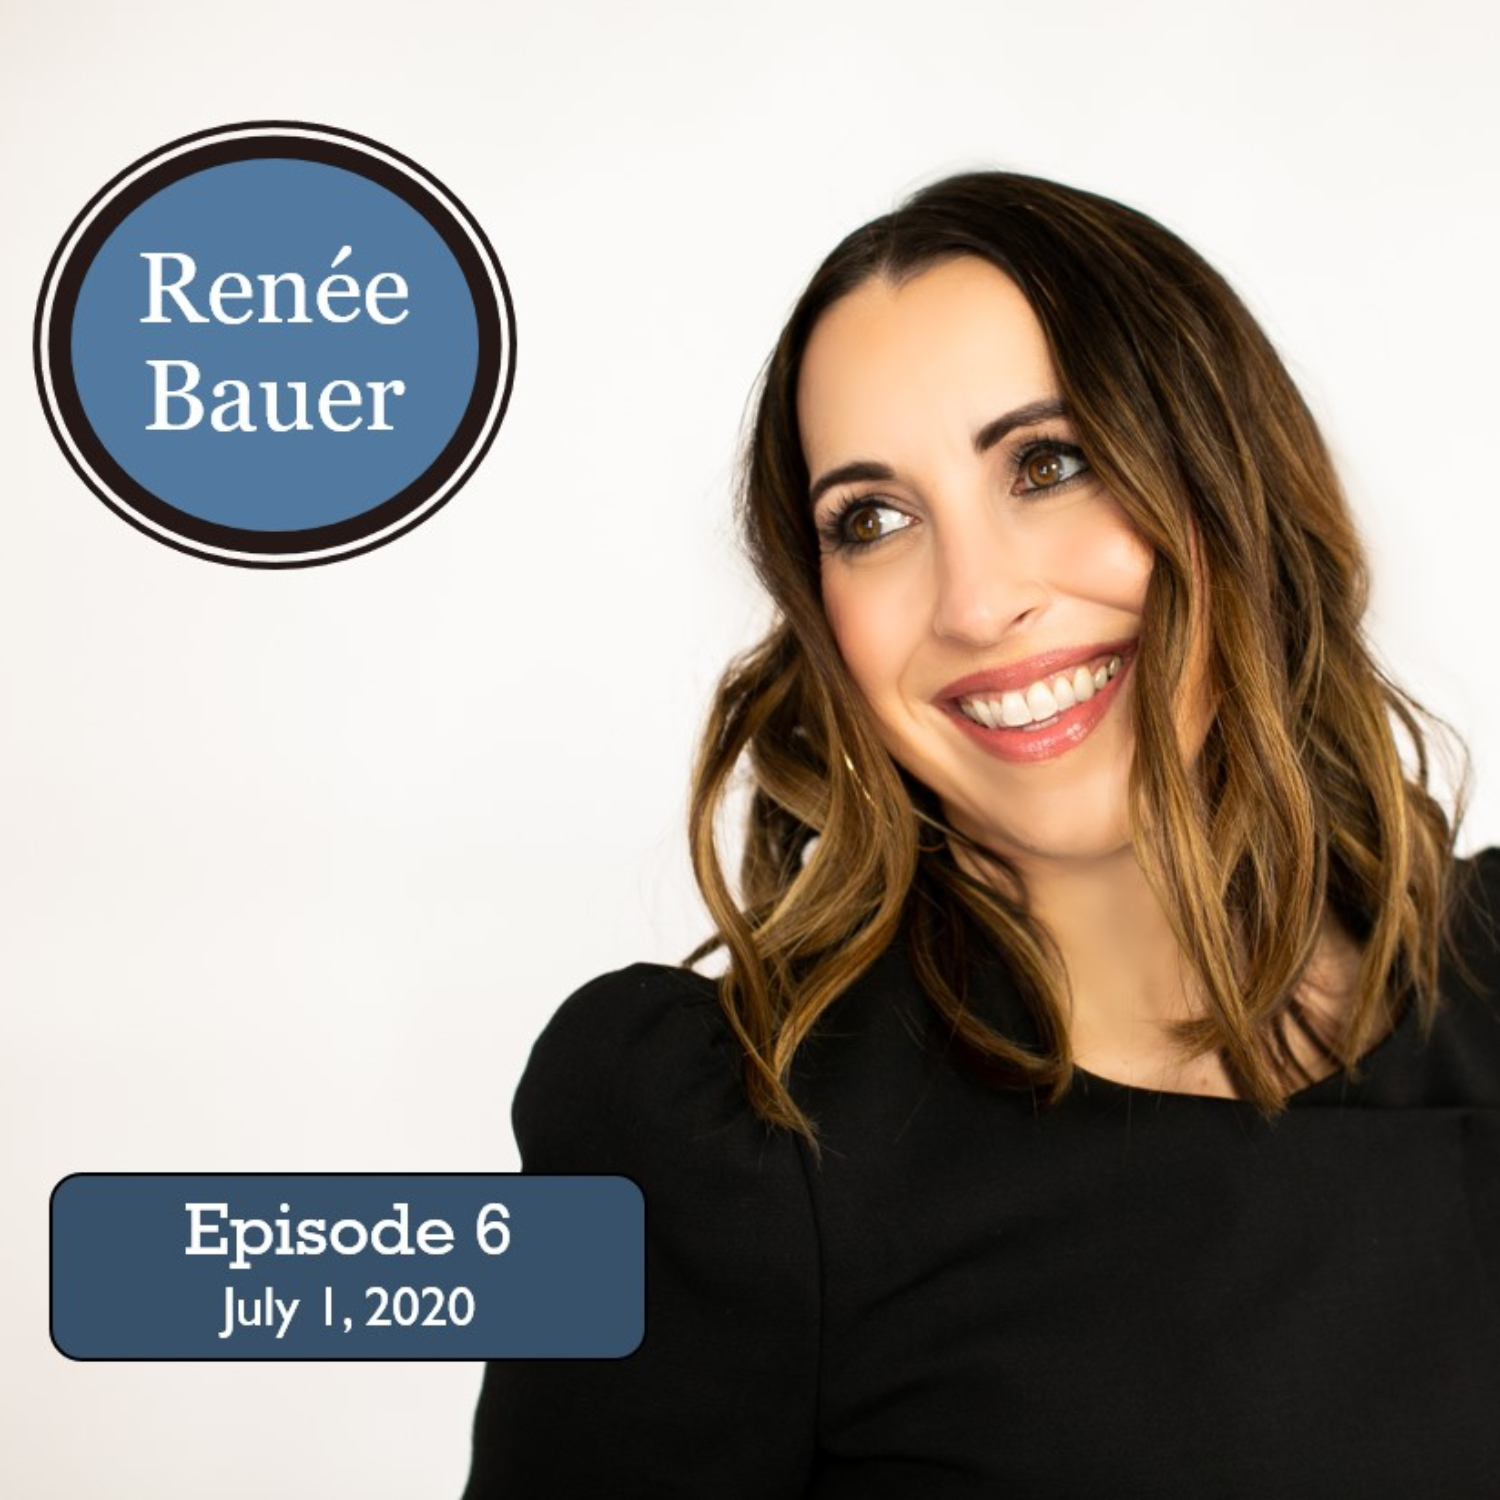 Episode 6: Renee Bauer